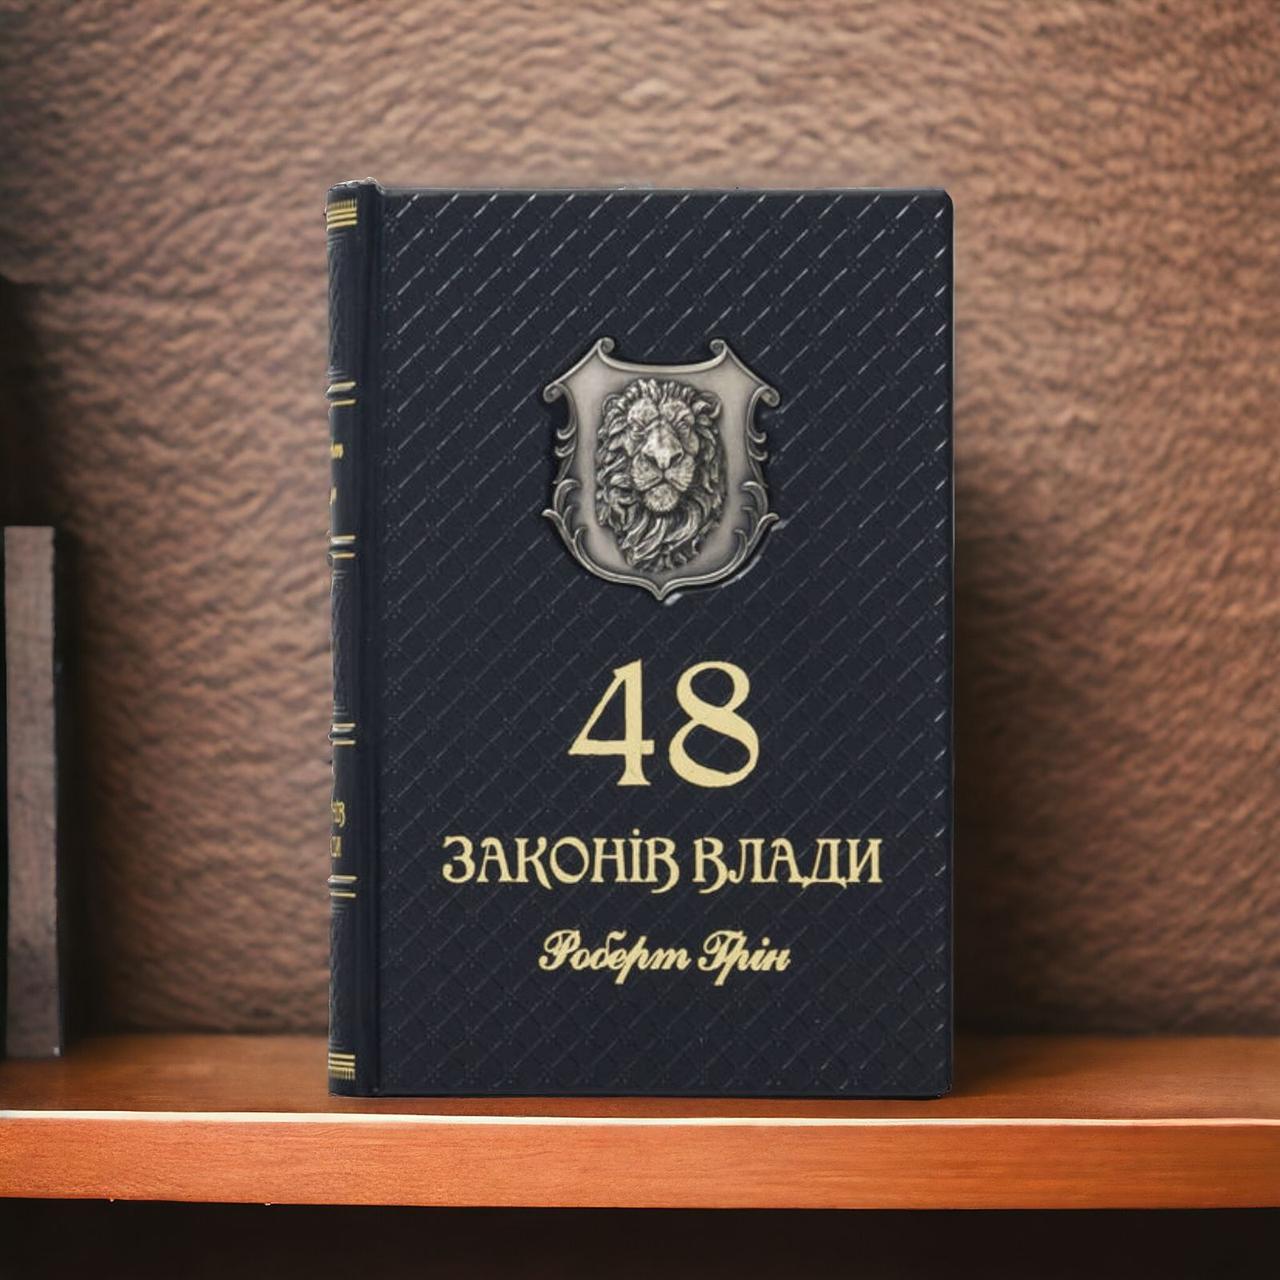 Шкіряна елітна книга "48 Закону Владу" Роберт Грін українською мовою